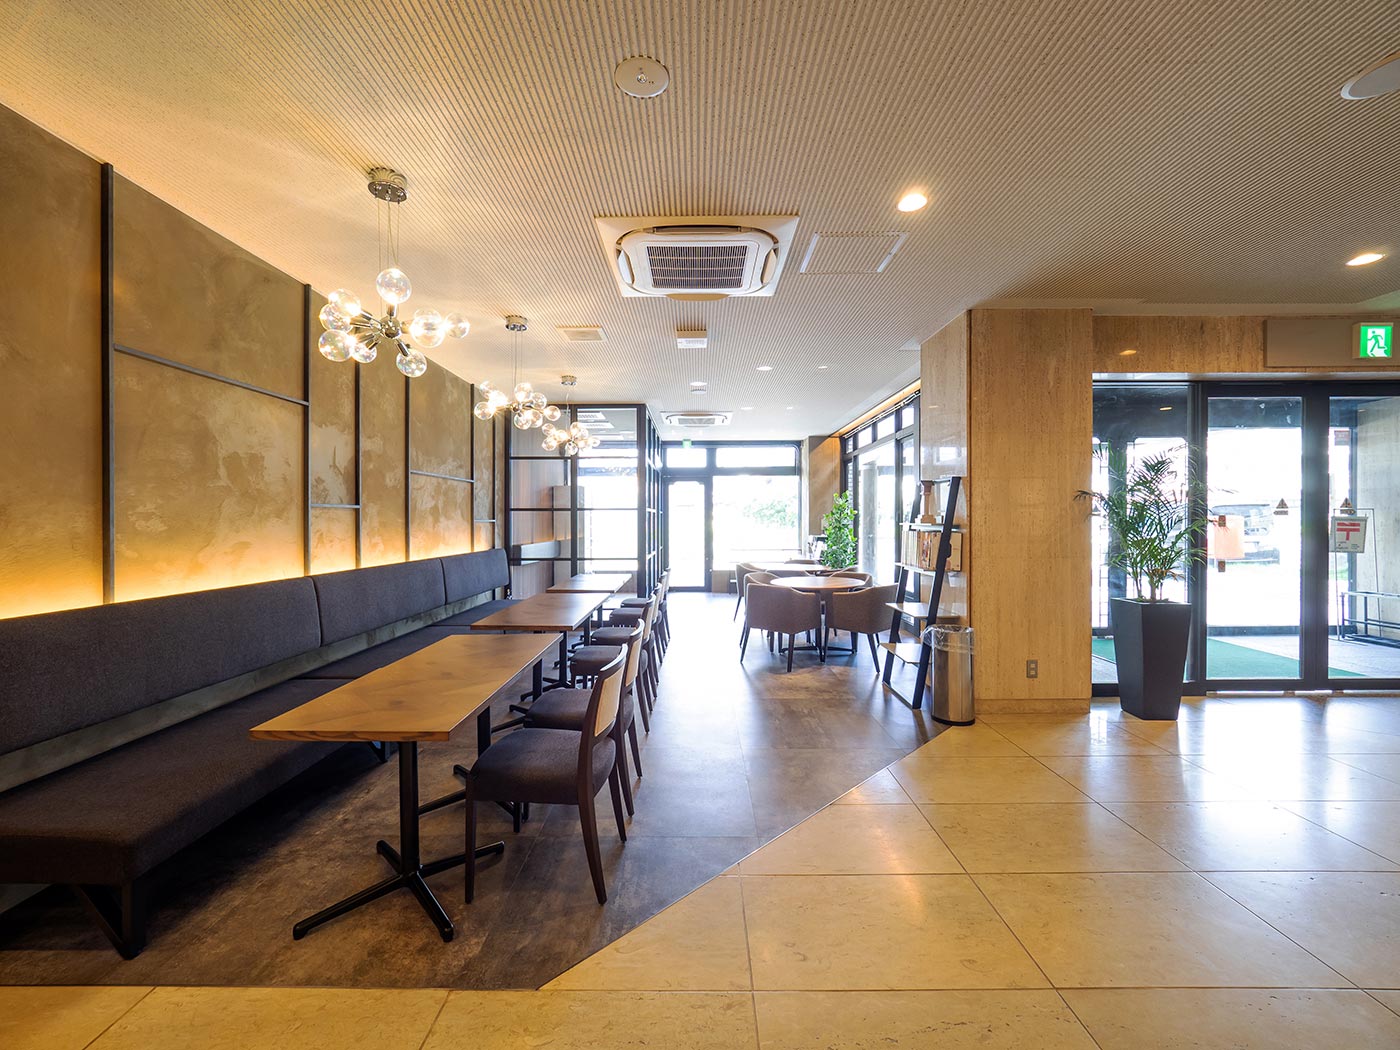 滋賀県でリニューアルされた「草津第一ホテル」の明るく広い休憩コーナー|PARKDESIGN（パークデザイン）のホテルデザイン事例